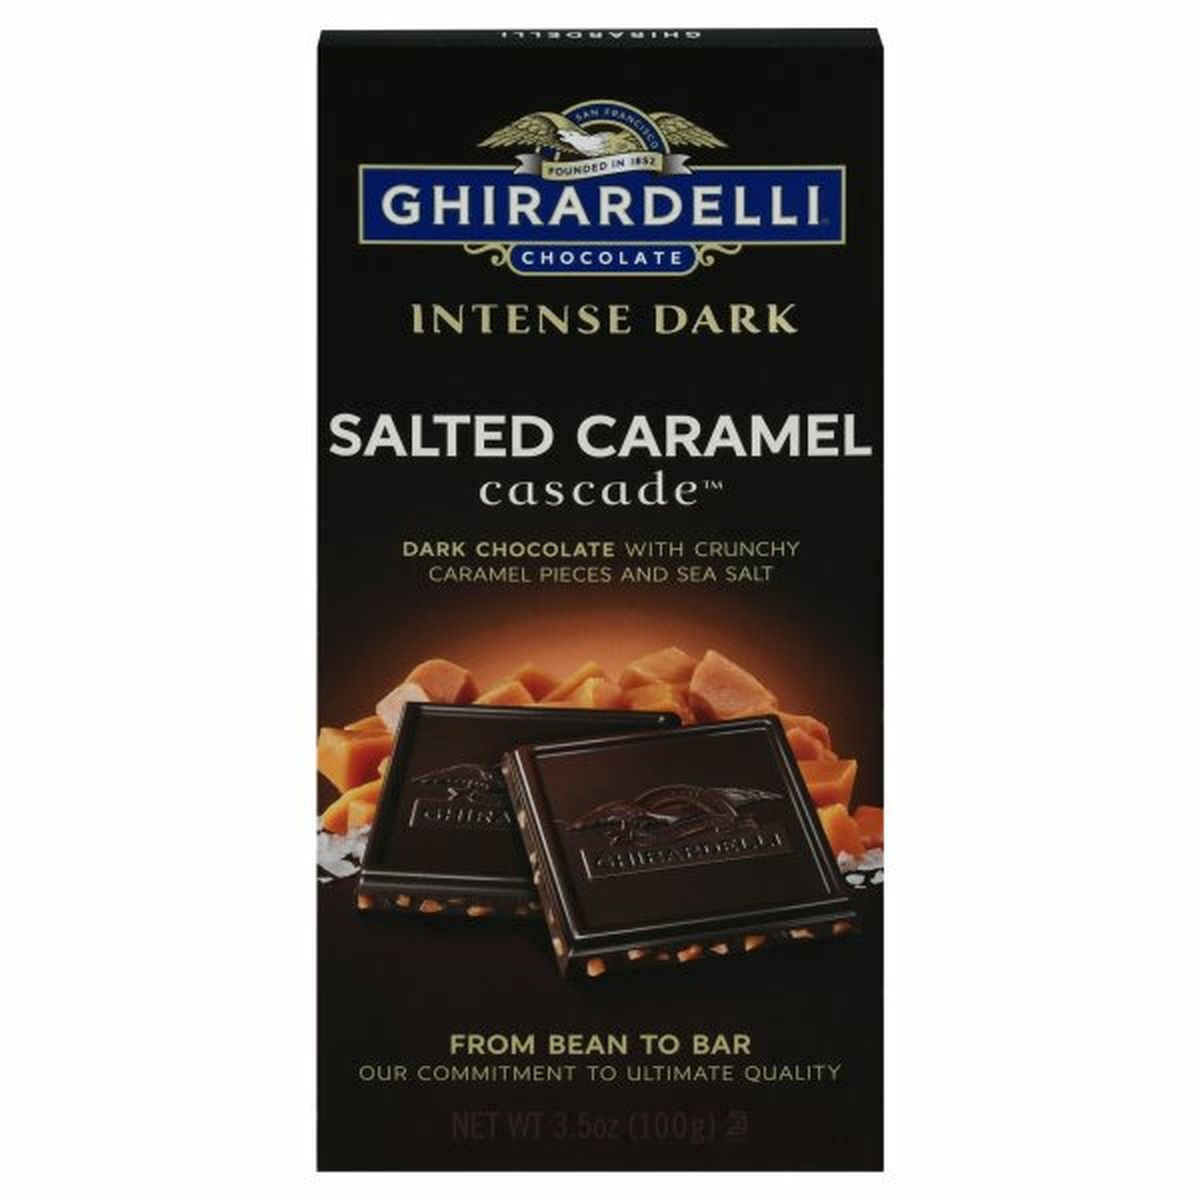 Calories in Ghirardelli Dark Chocolate, Salted Caramel Cascade, Intense Dark